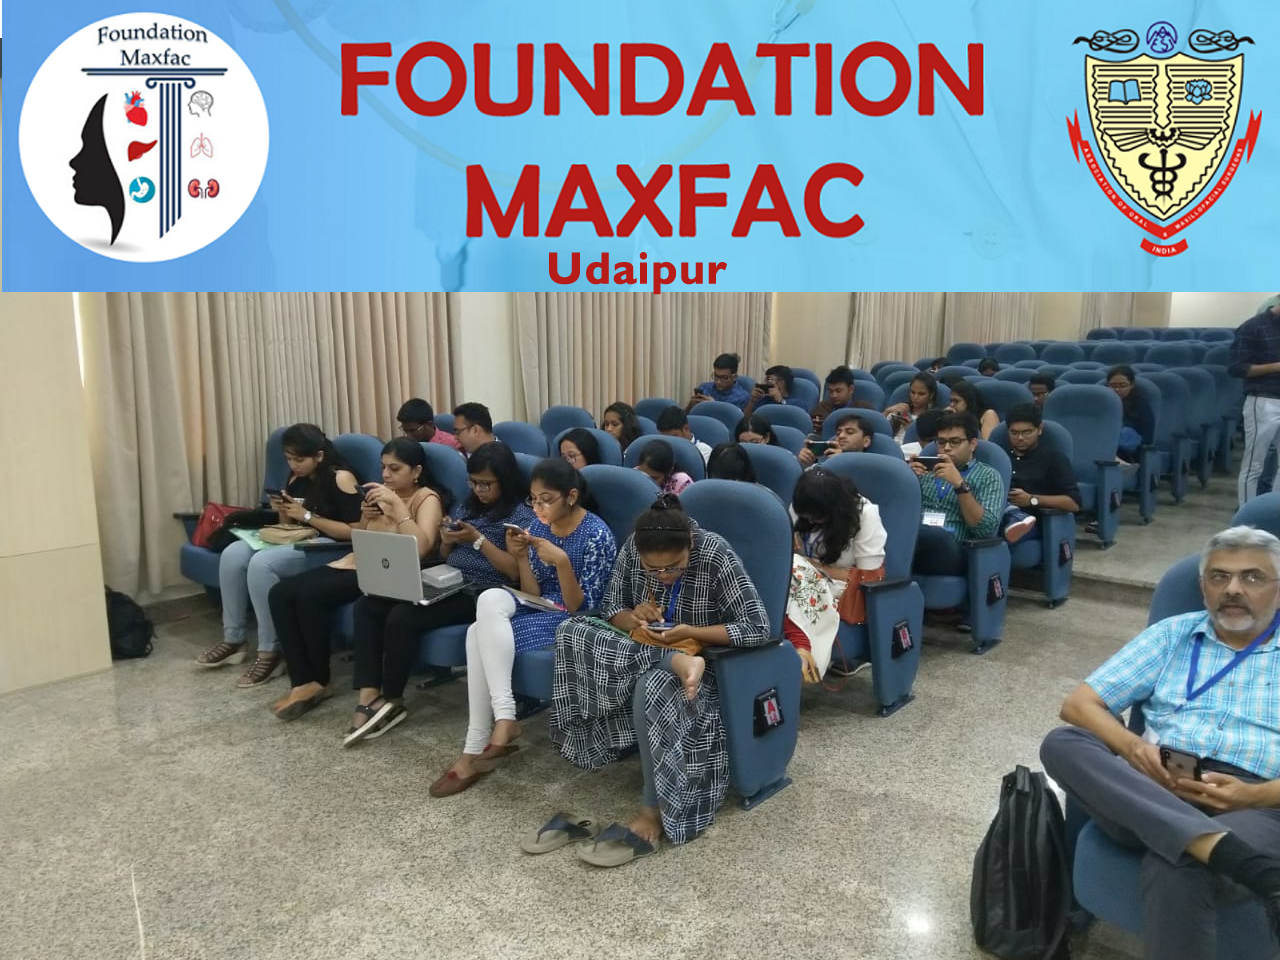 Foundation MaxFac - Udaipur